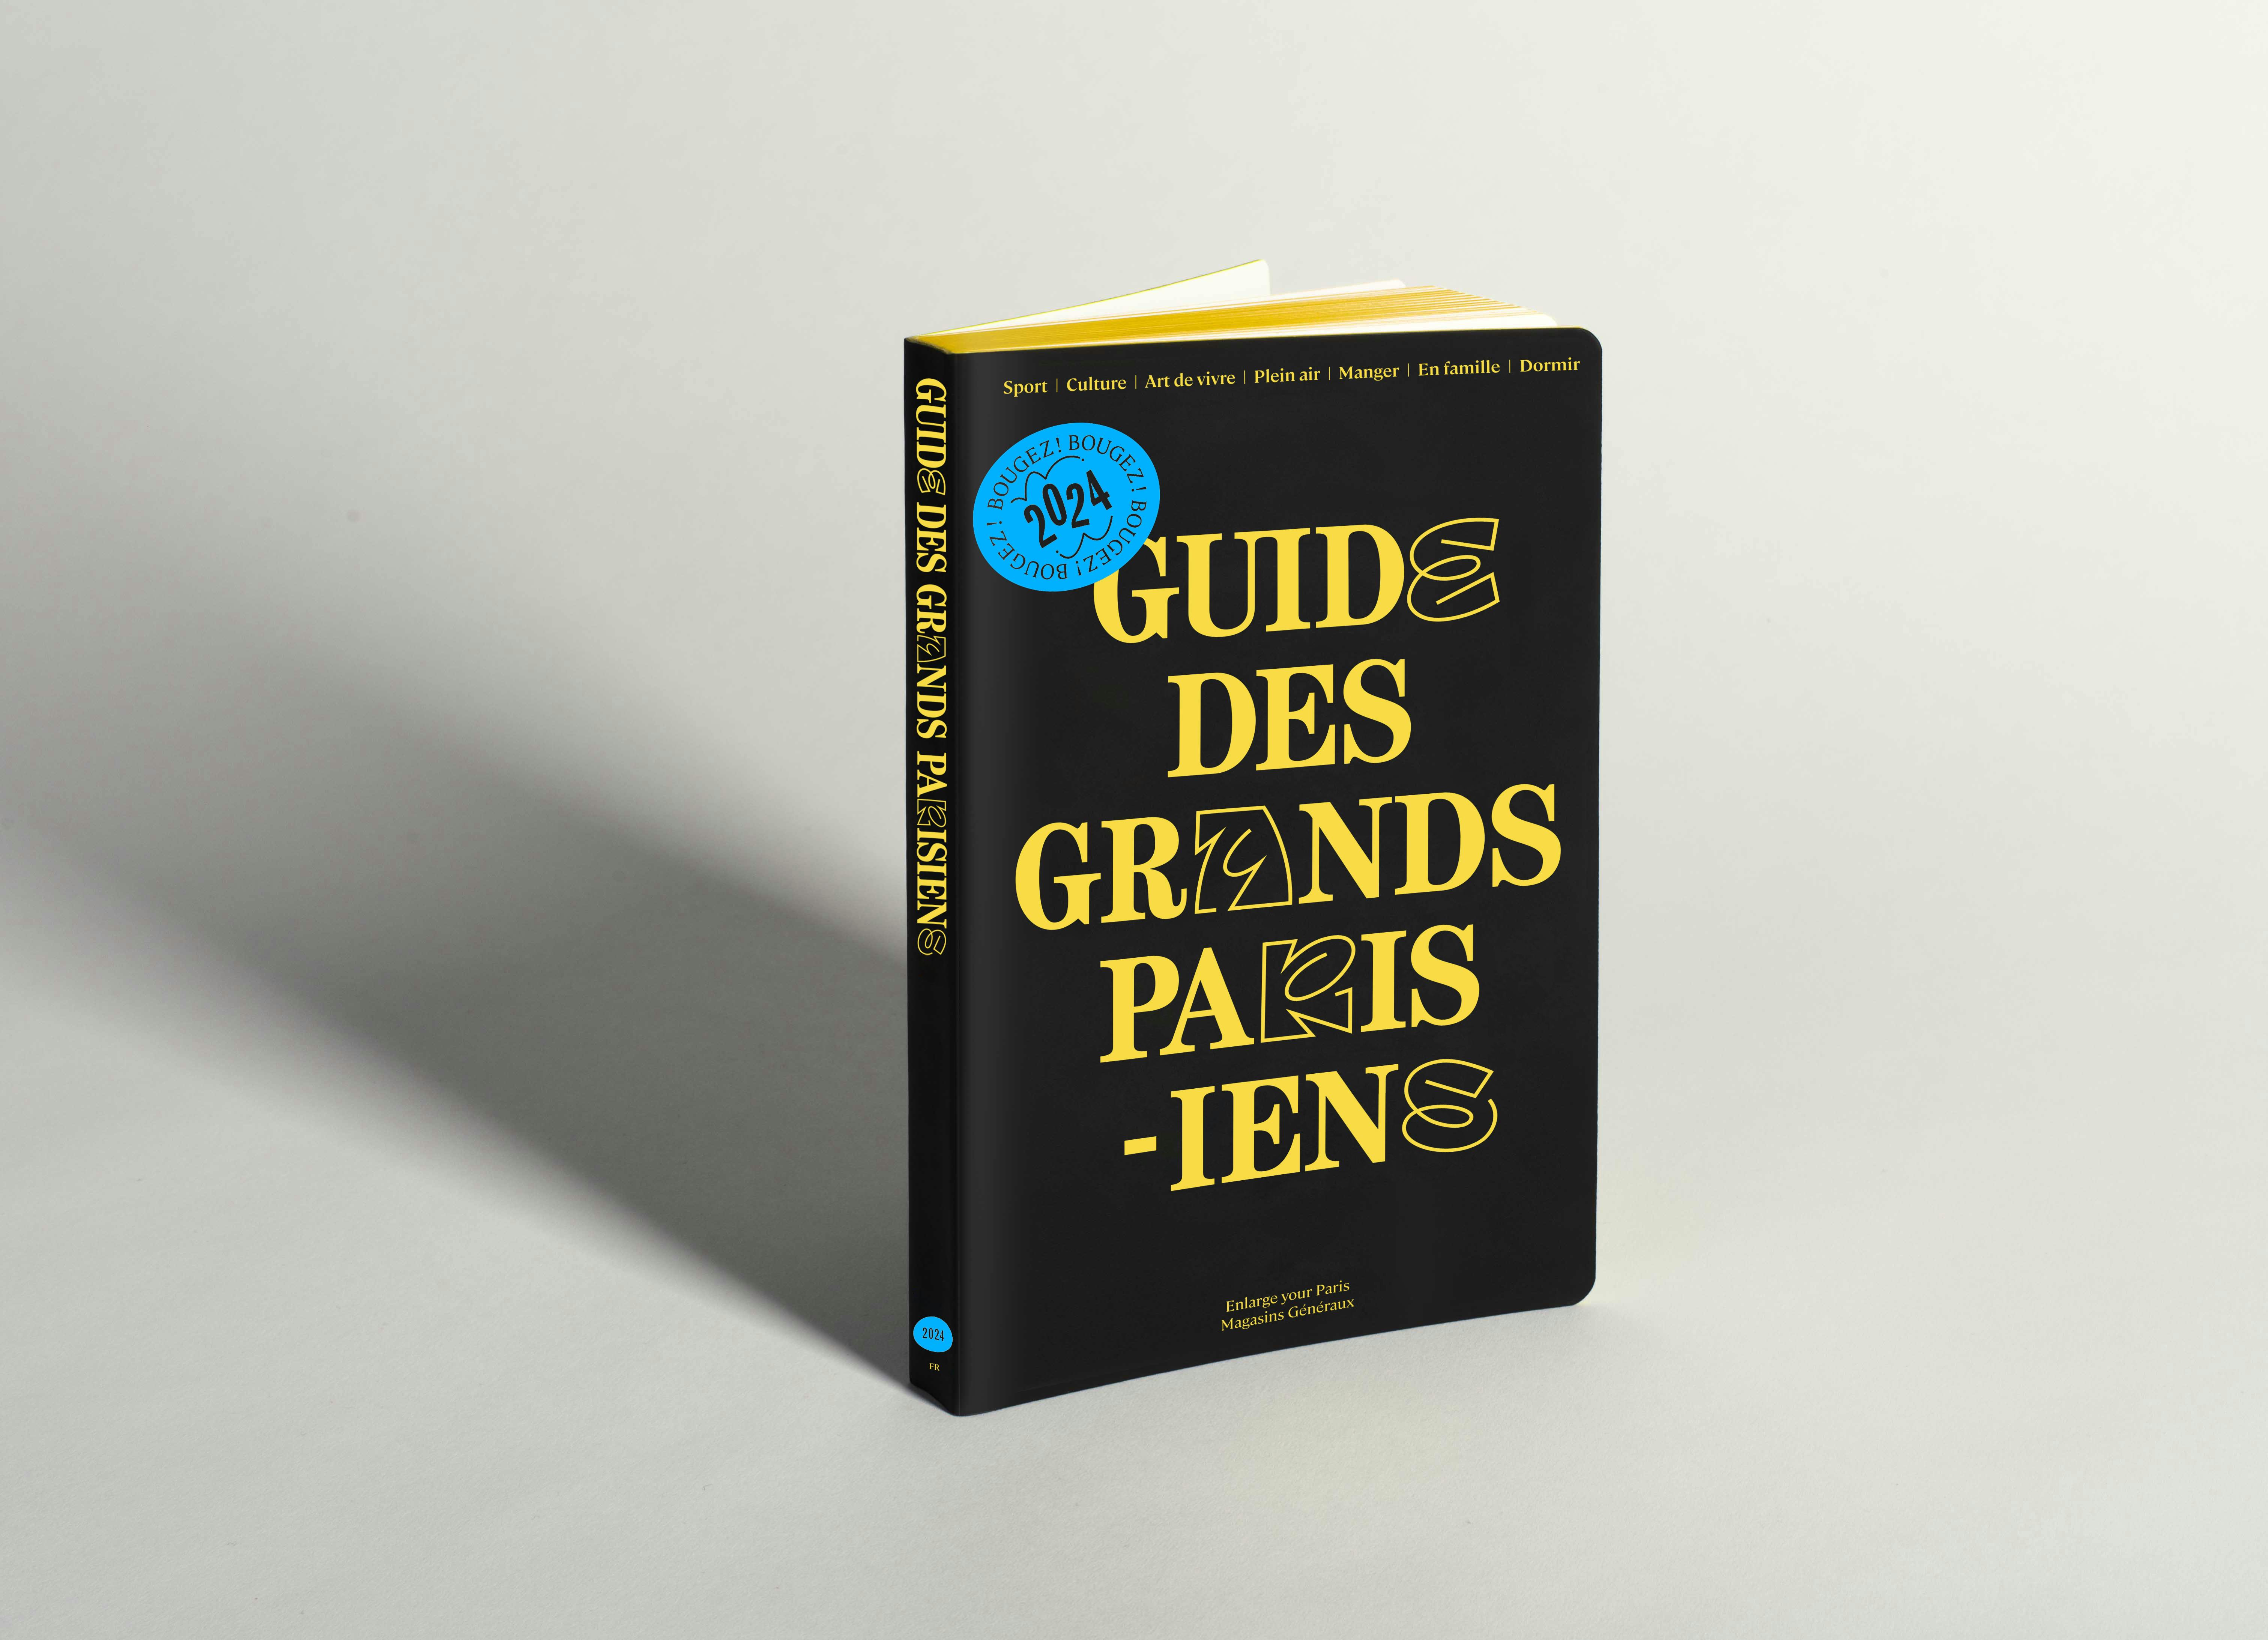 Vincent Migrenne, Magasins Généraux, BETC, Rémi Babinet, Enlarge Your Paris, Balade grand-parisienne, Guide des Grands Parisiens, Pantin